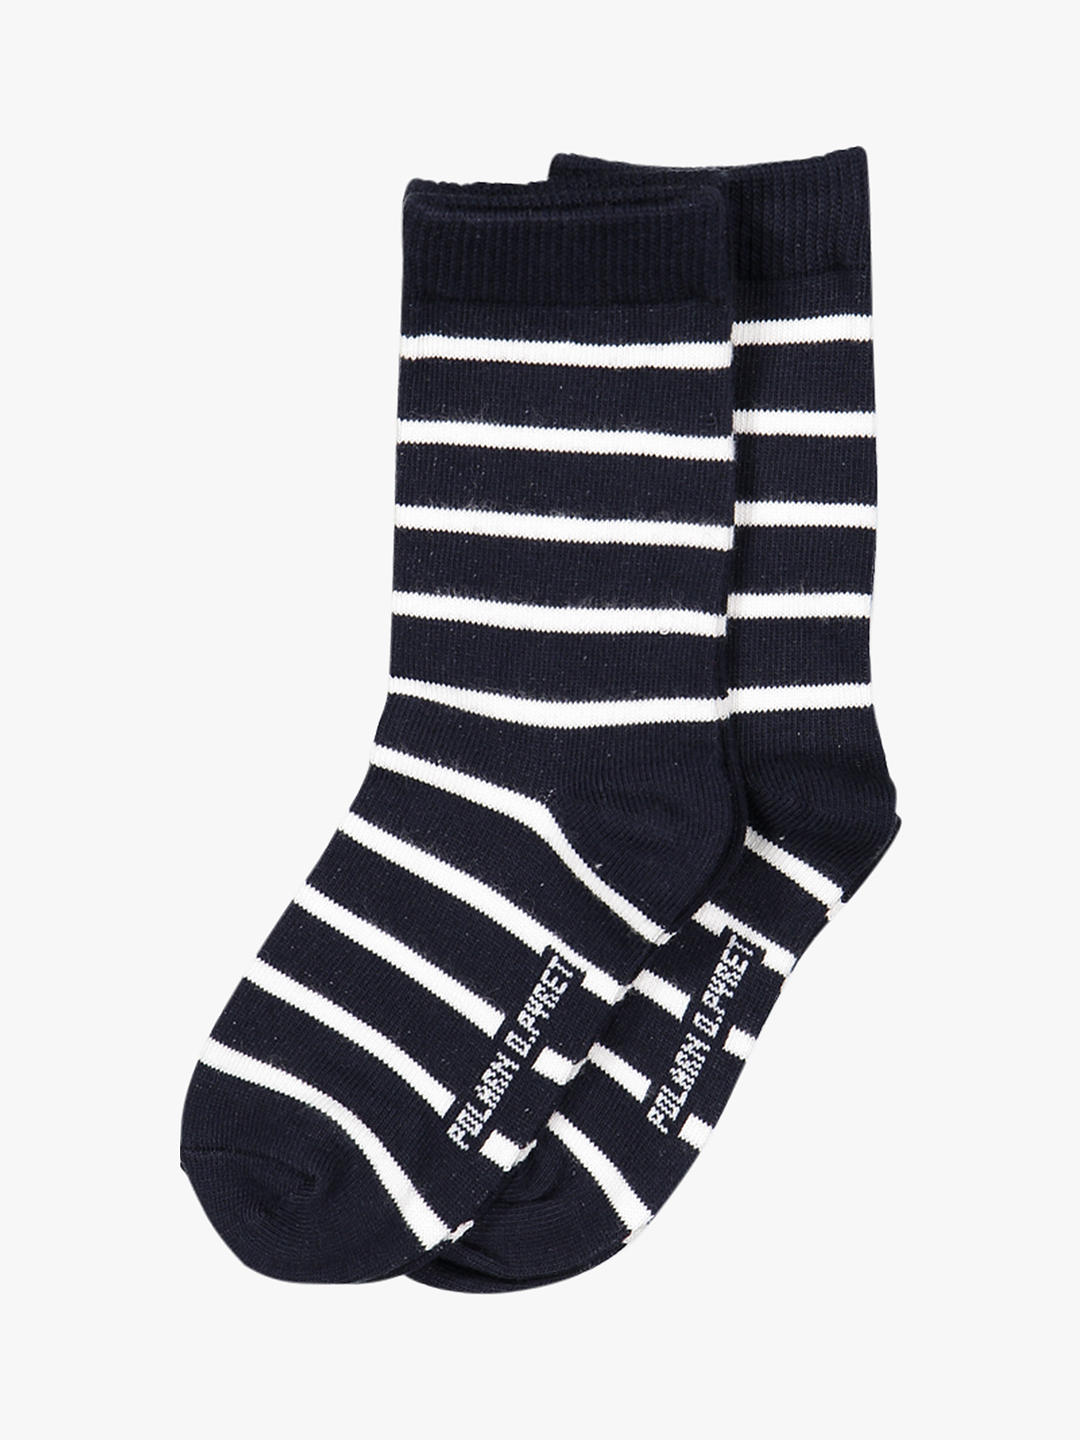 Polarn O. Pyret Children's Stripe Socks, Pack of 2, Blue at John Lewis ...